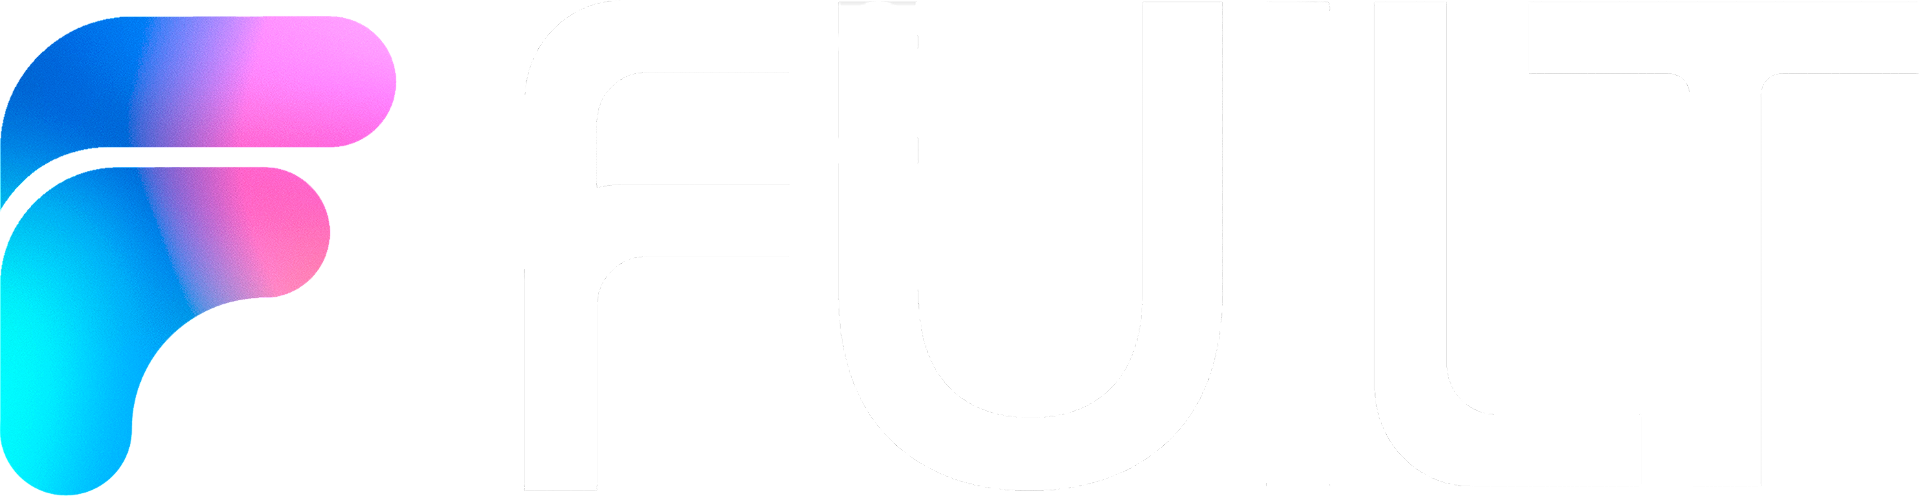 Fuilt logo